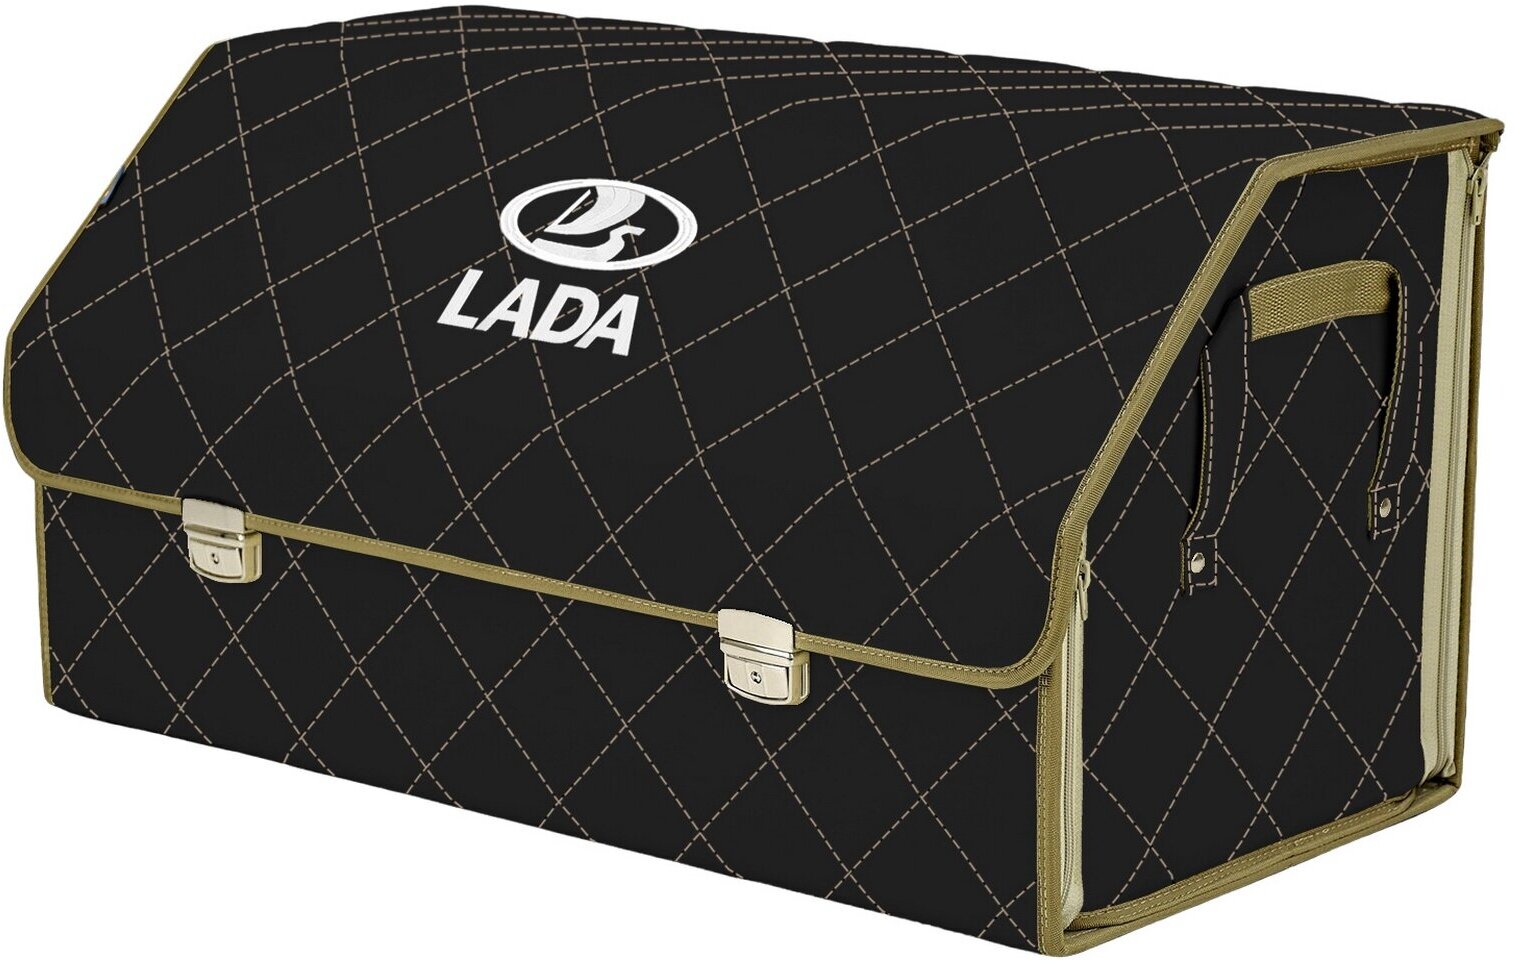 Органайзер-саквояж в багажник "Союз Премиум" (размер XL Plus). Цвет: черный с бежевой прострочкой Ромб и вышивкой LADA (лада).